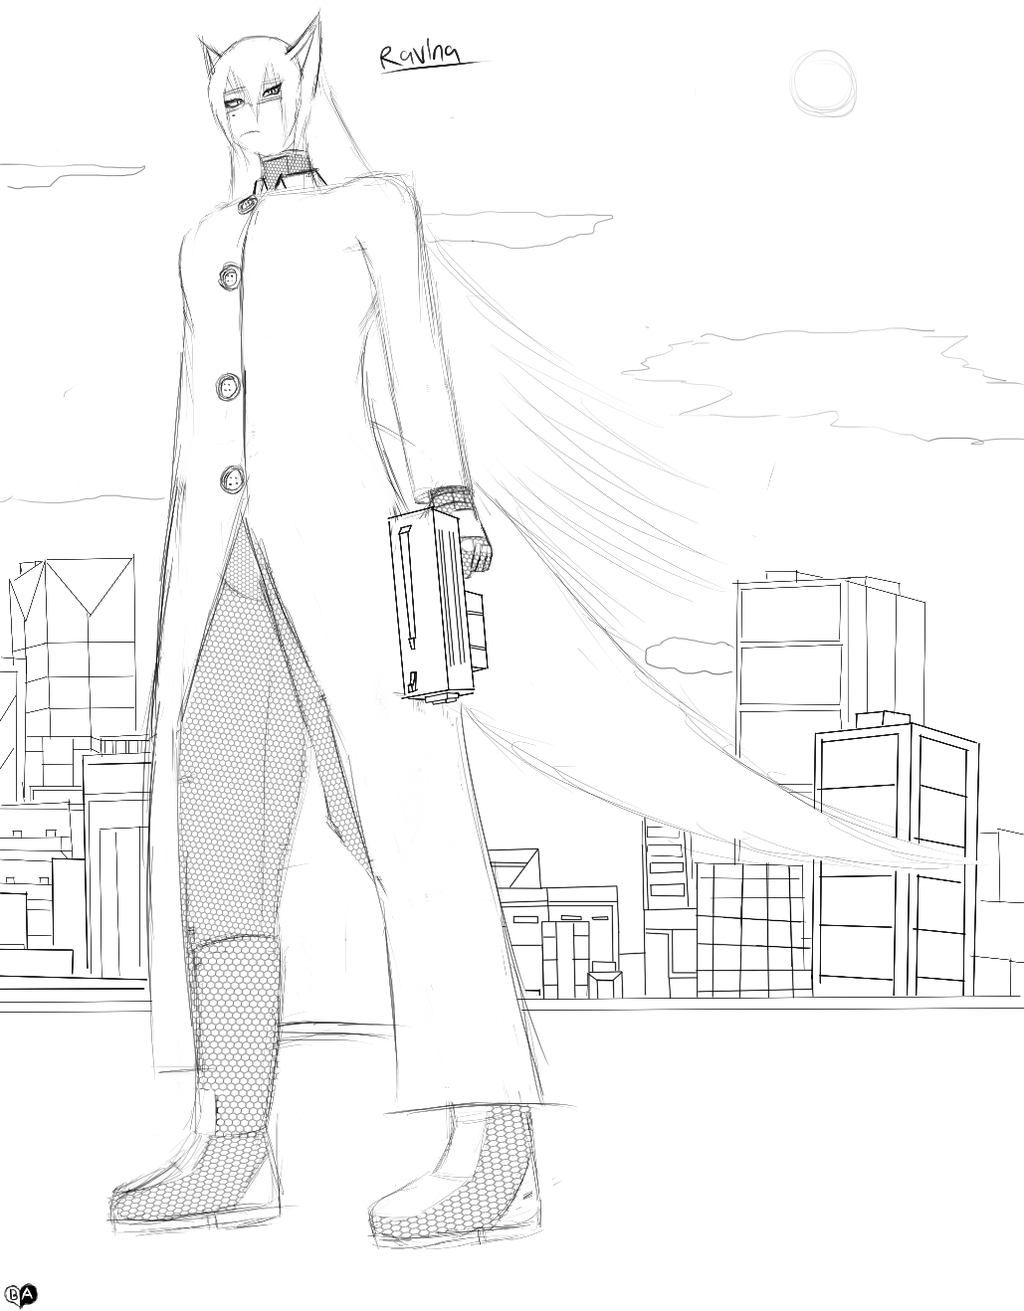 Ravina Sketch - City Defender